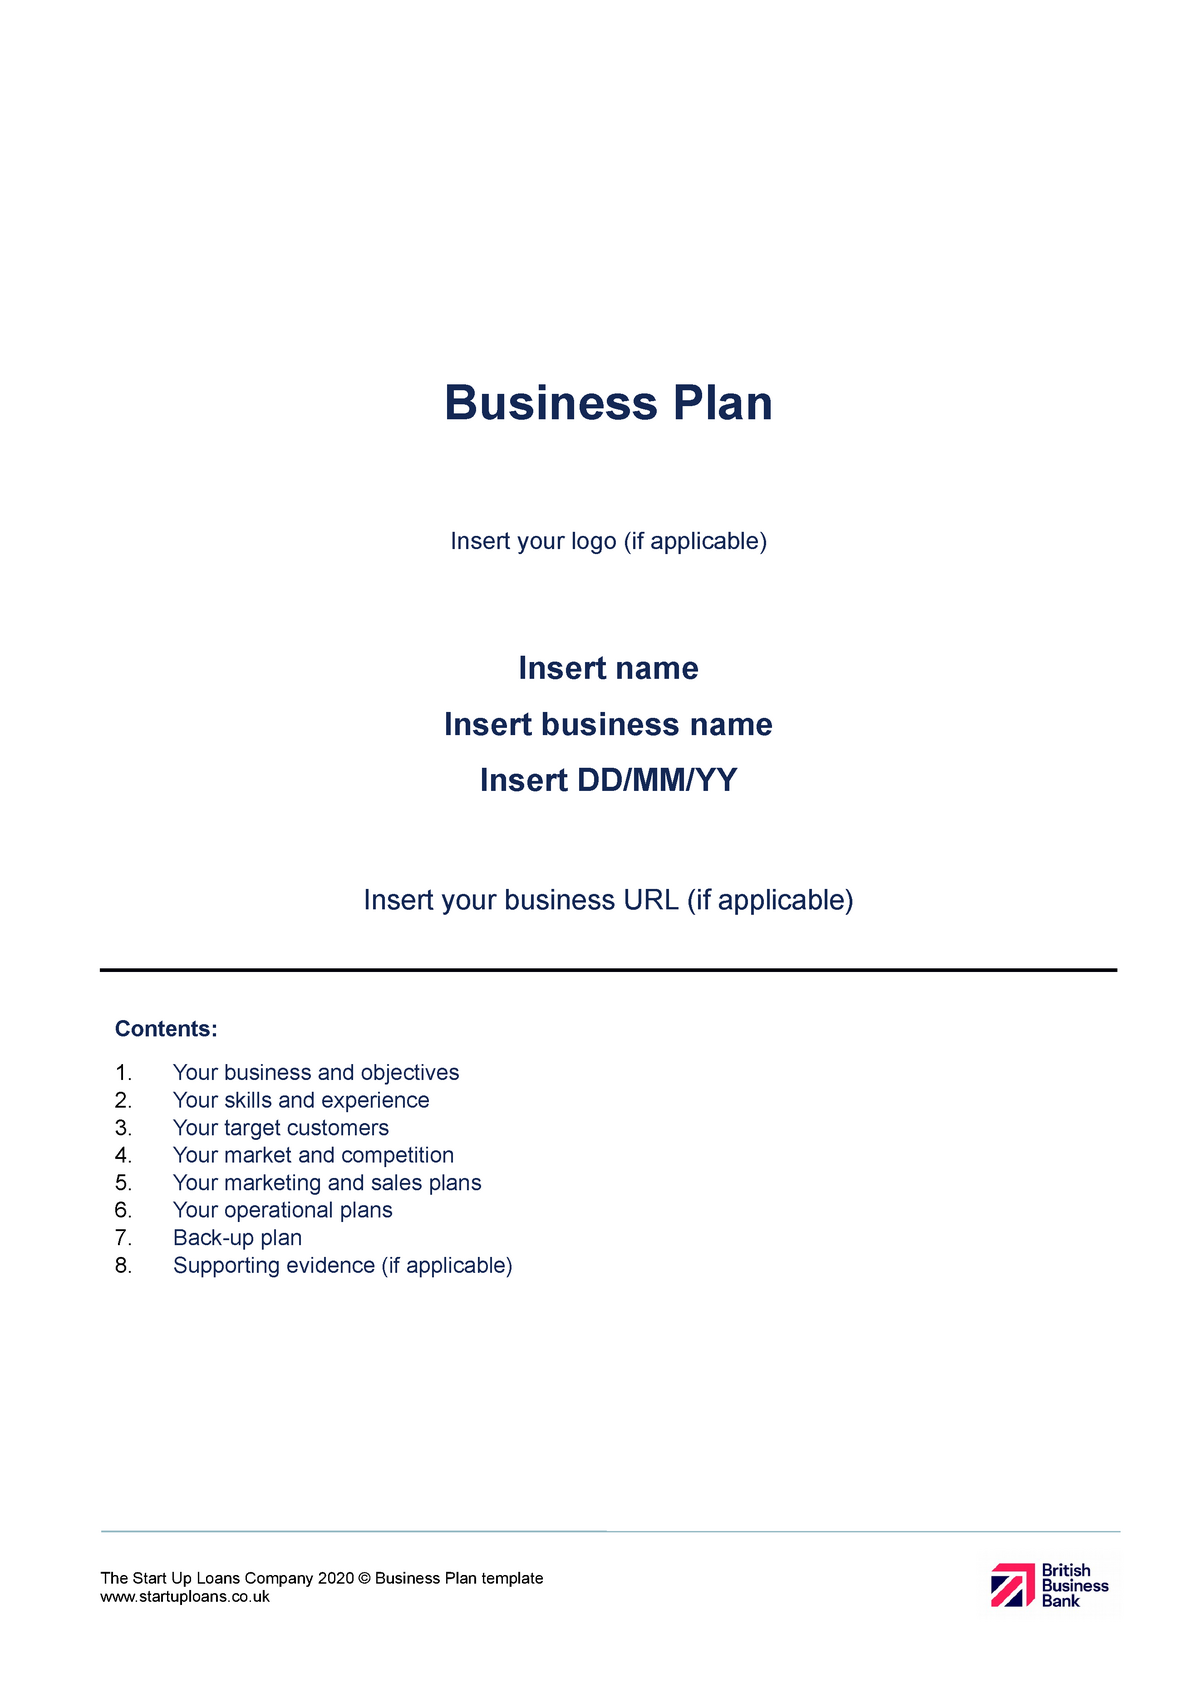 start up loans business plan